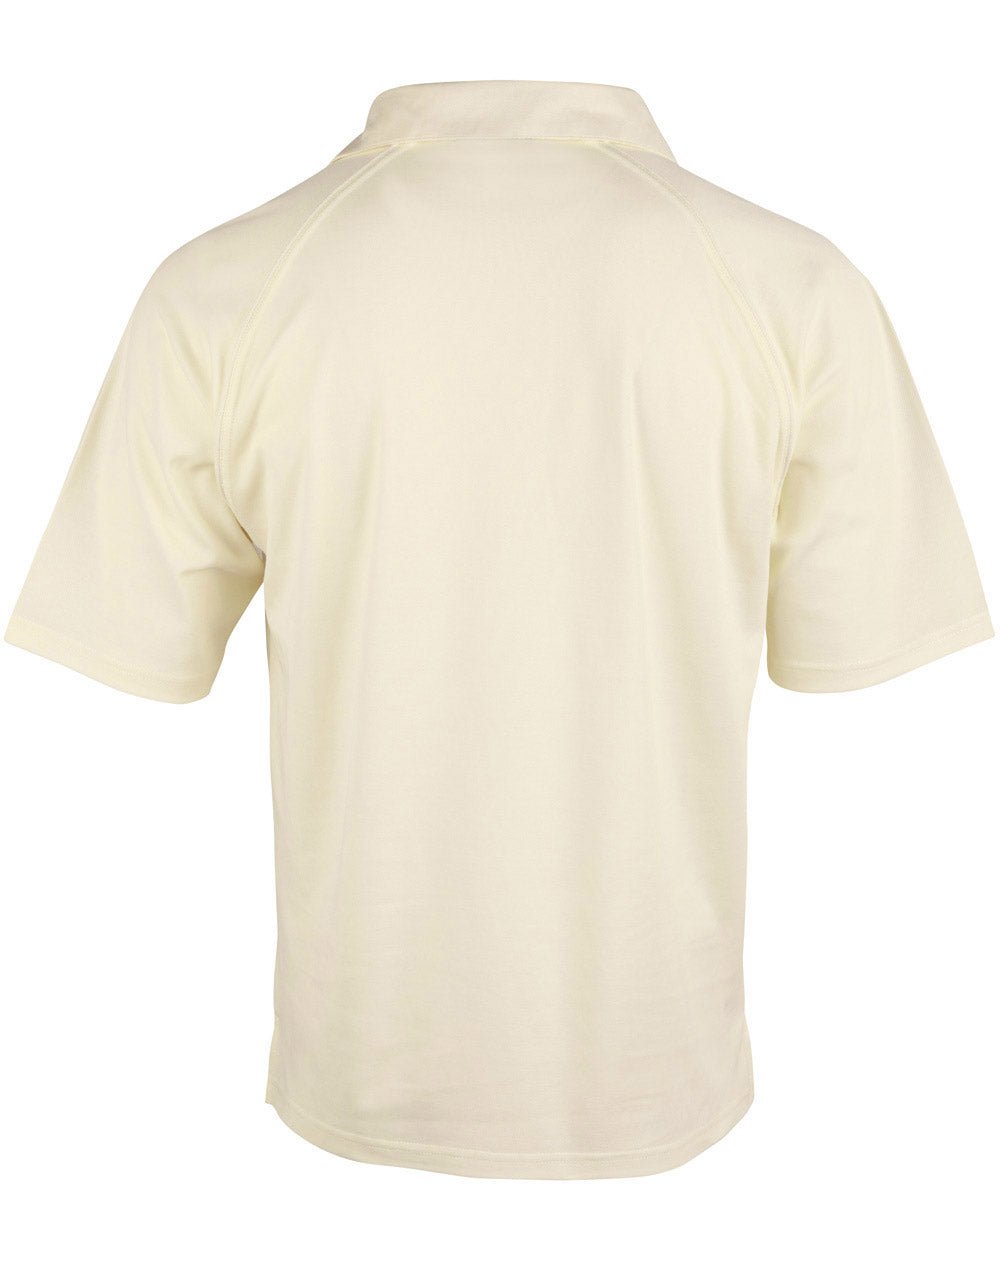 PS29 CRICKET POLO Short Sleeve Men's - Icon Tshirts